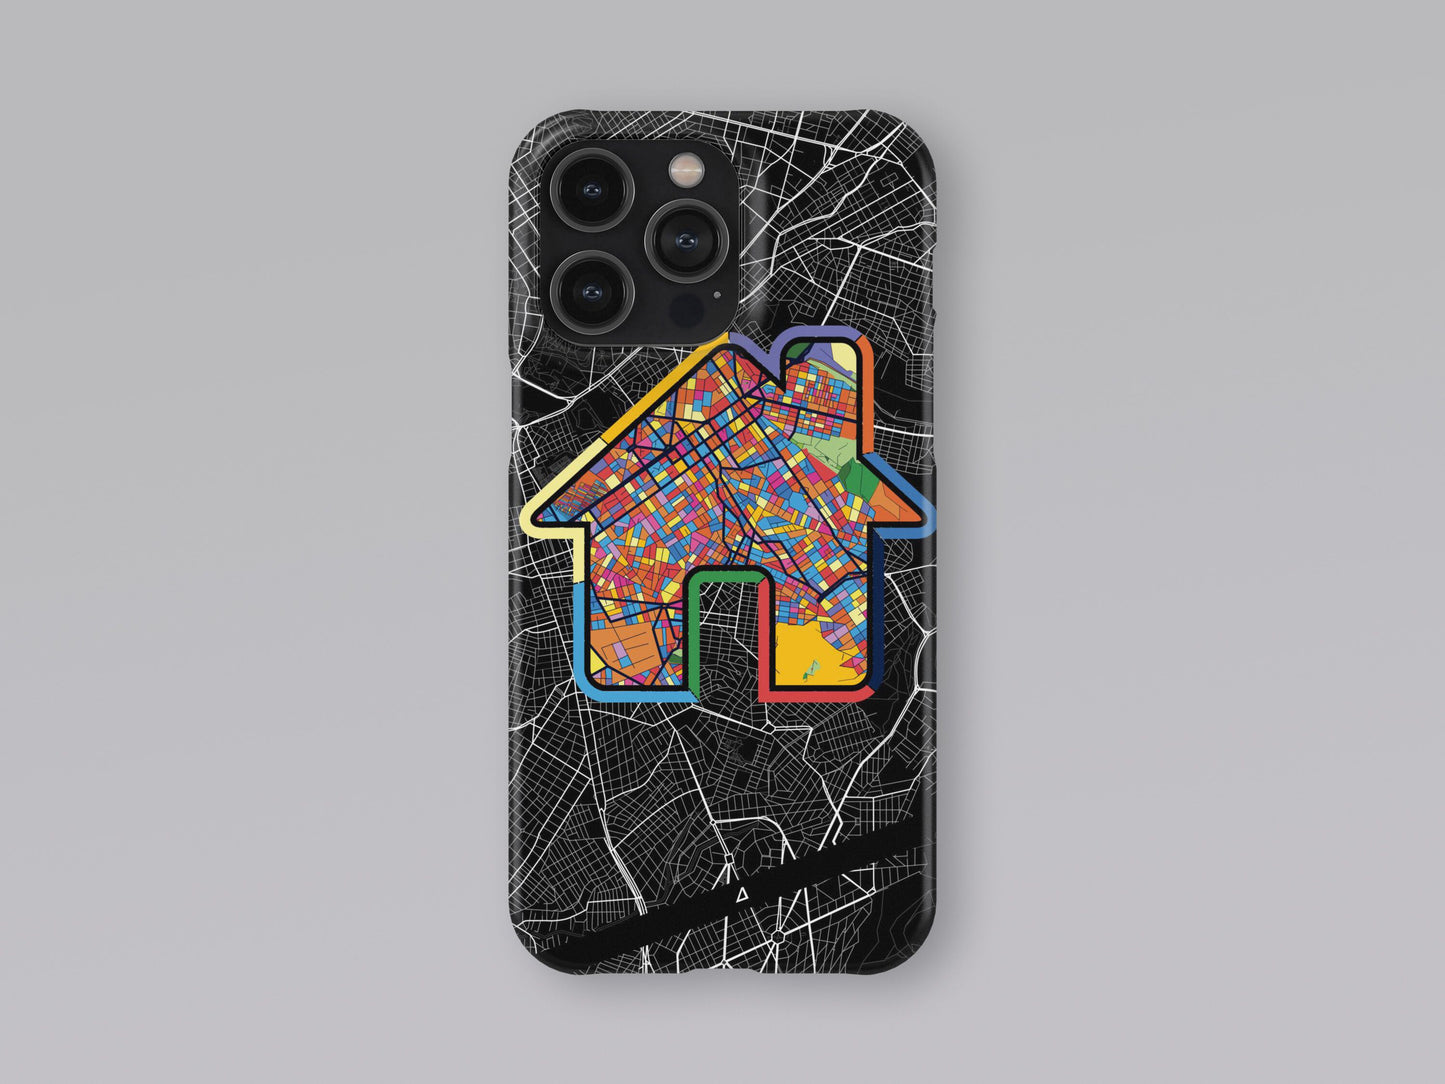 Βυρονας Ελλαδα slim phone case with colorful icon 3